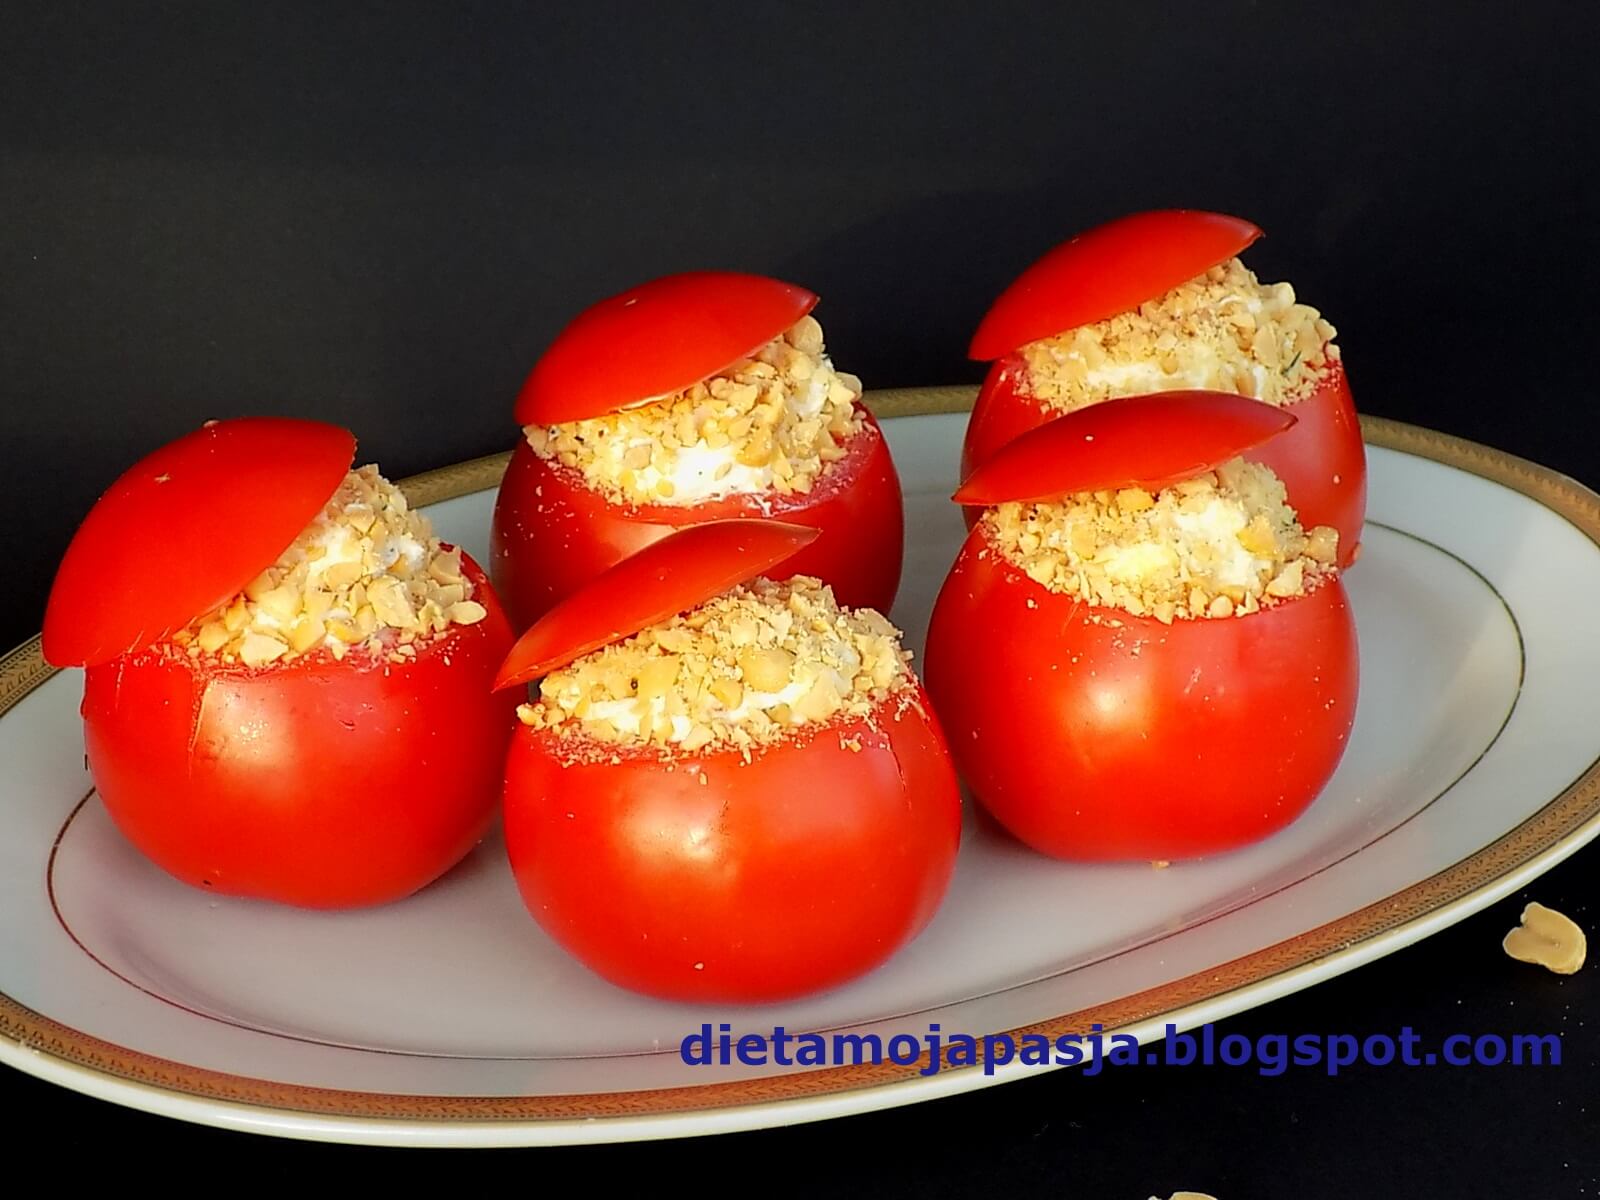 Nadziewane pomidory - pachnąca przystawka 